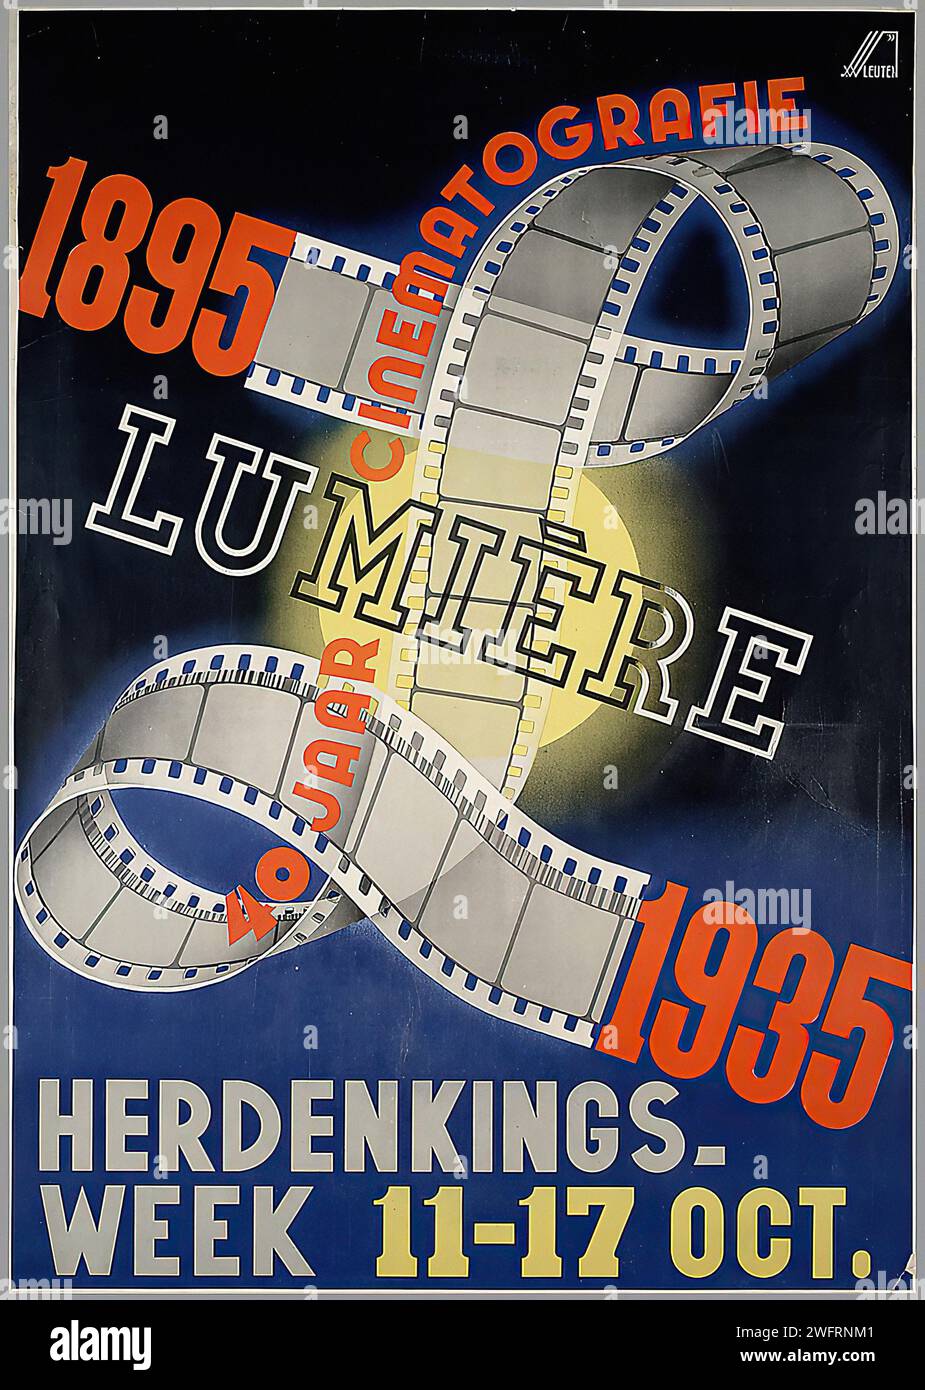 '1895 CINEMATOGRAPHIE LUMIERE 1935' '40 JAAR HERDENKINGSWEEK 11-17 OCT.' '1895 CINEMATOGRAPHIE LUMIERE 1935' '40 YEARS ANNIVERSARY WEEK OCT. 11-17' Vintage Dutch Publicité. Affiche bleue et orange dynamique célébrant la cinématographie lumière. Banque D'Images